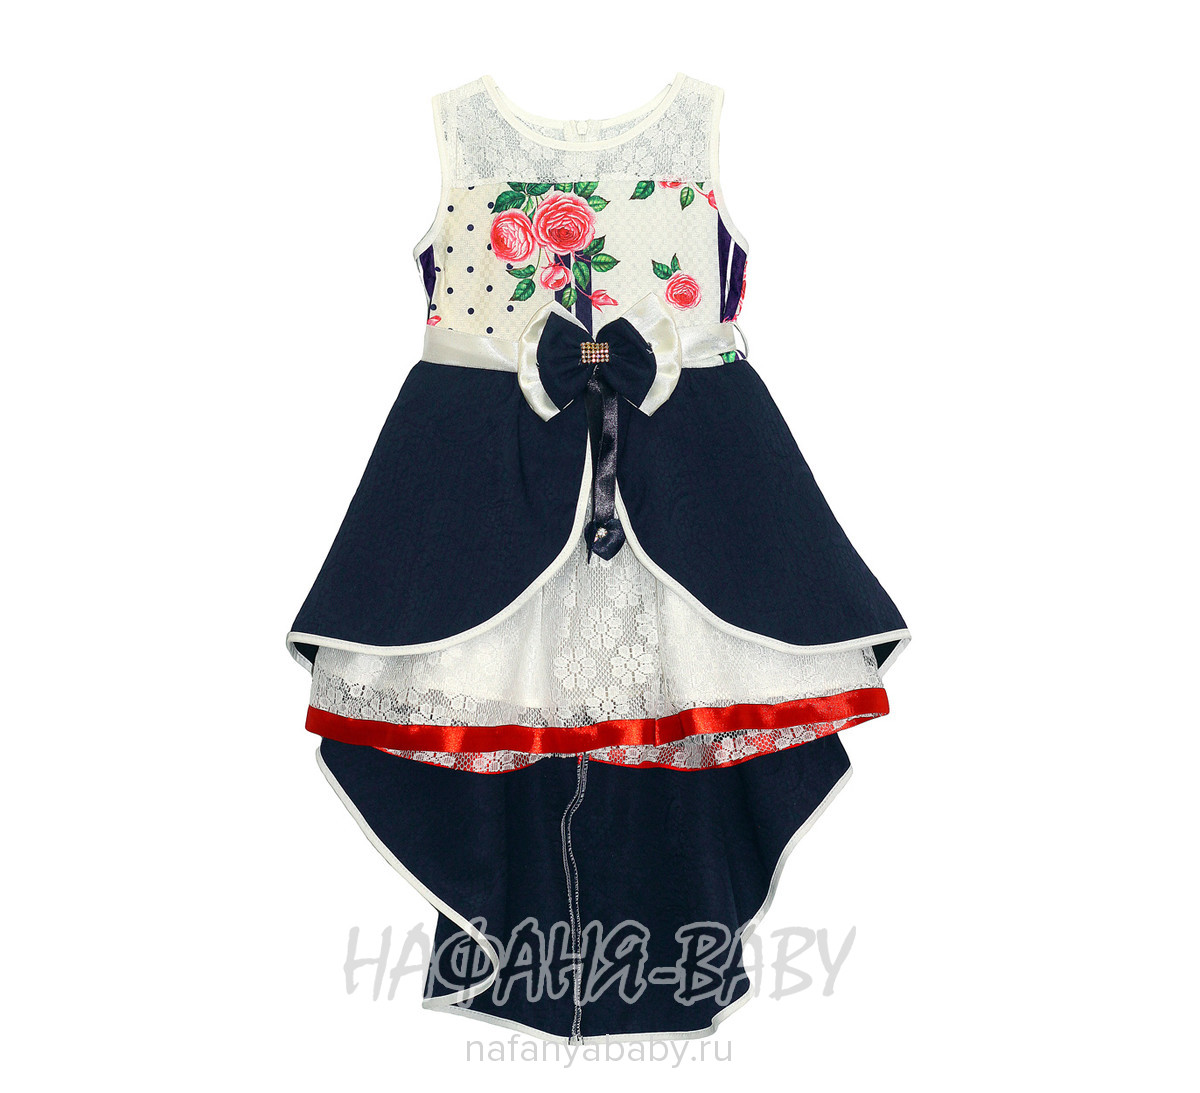 Детское нарядное платье Miss GOLDEN, купить в интернет магазине Нафаня. арт: 199.